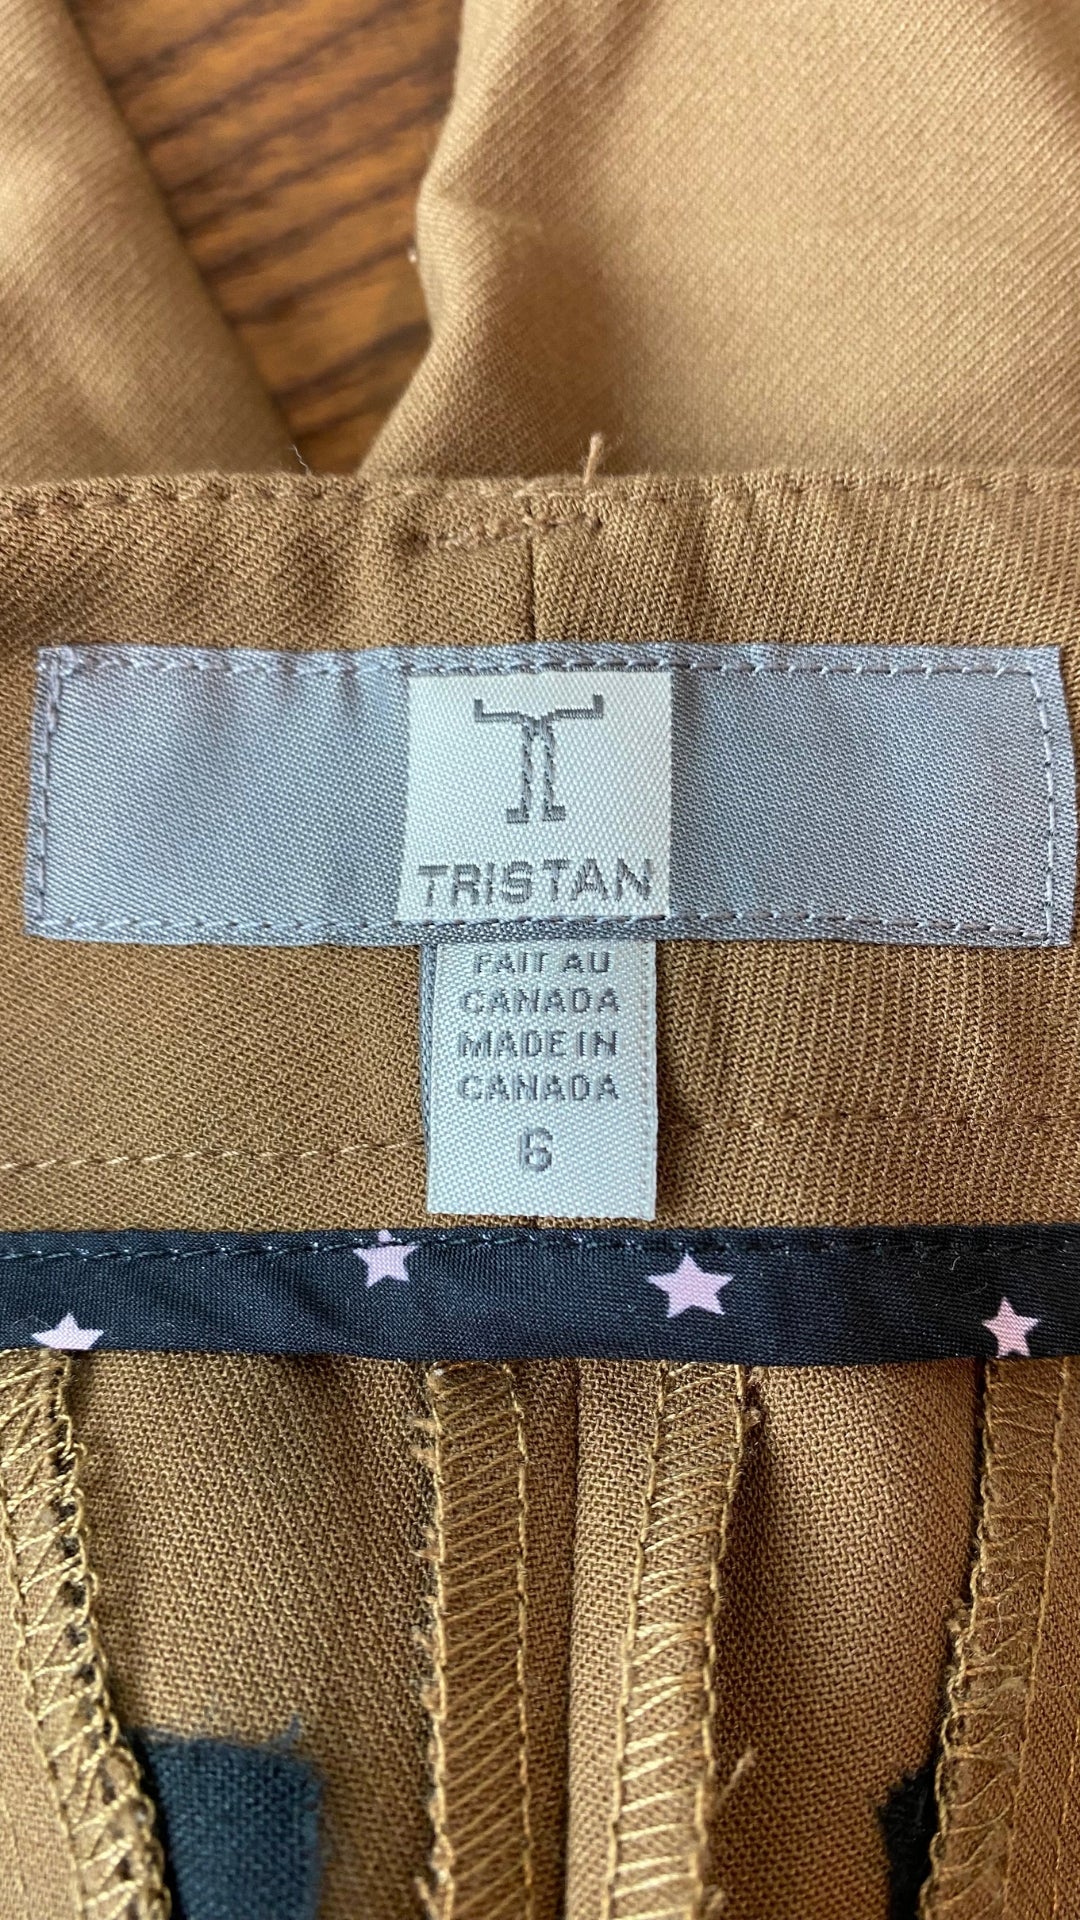 Pantalon chameau jambe droite Tristan, taille 6. Vue de l'étiquette de marque et taille.